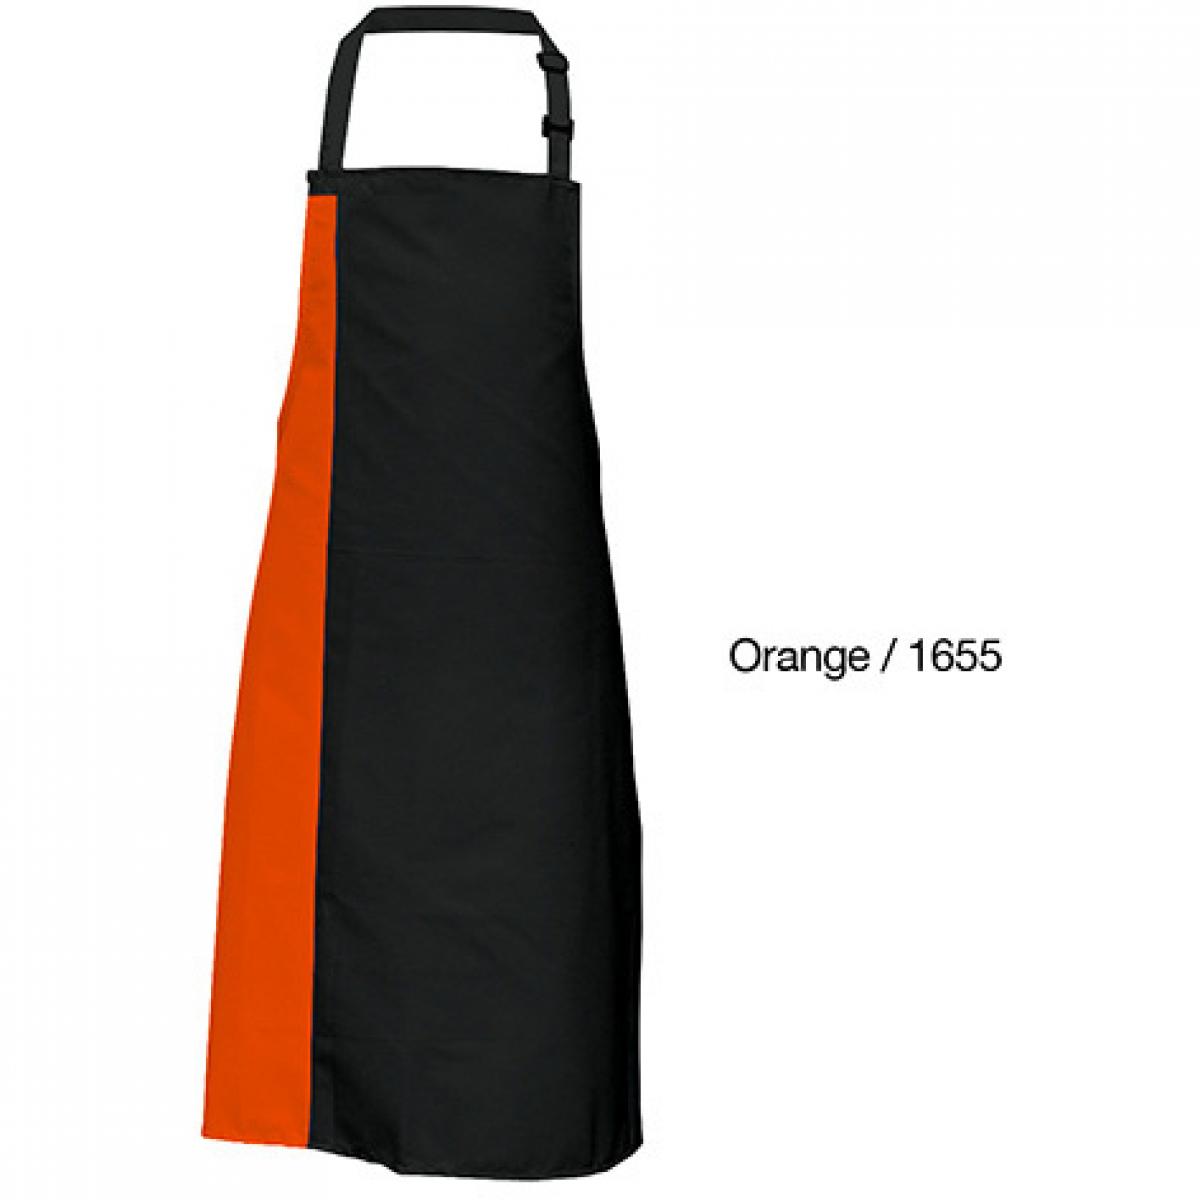 Hersteller: Link Kitchen Wear Herstellernummer: DS8572 Artikelbezeichnung: Duo Apron - 72 x 85 cm - Waschbar bis 60 °C Farbe: Black/Orange (ca. Pantone 1655)